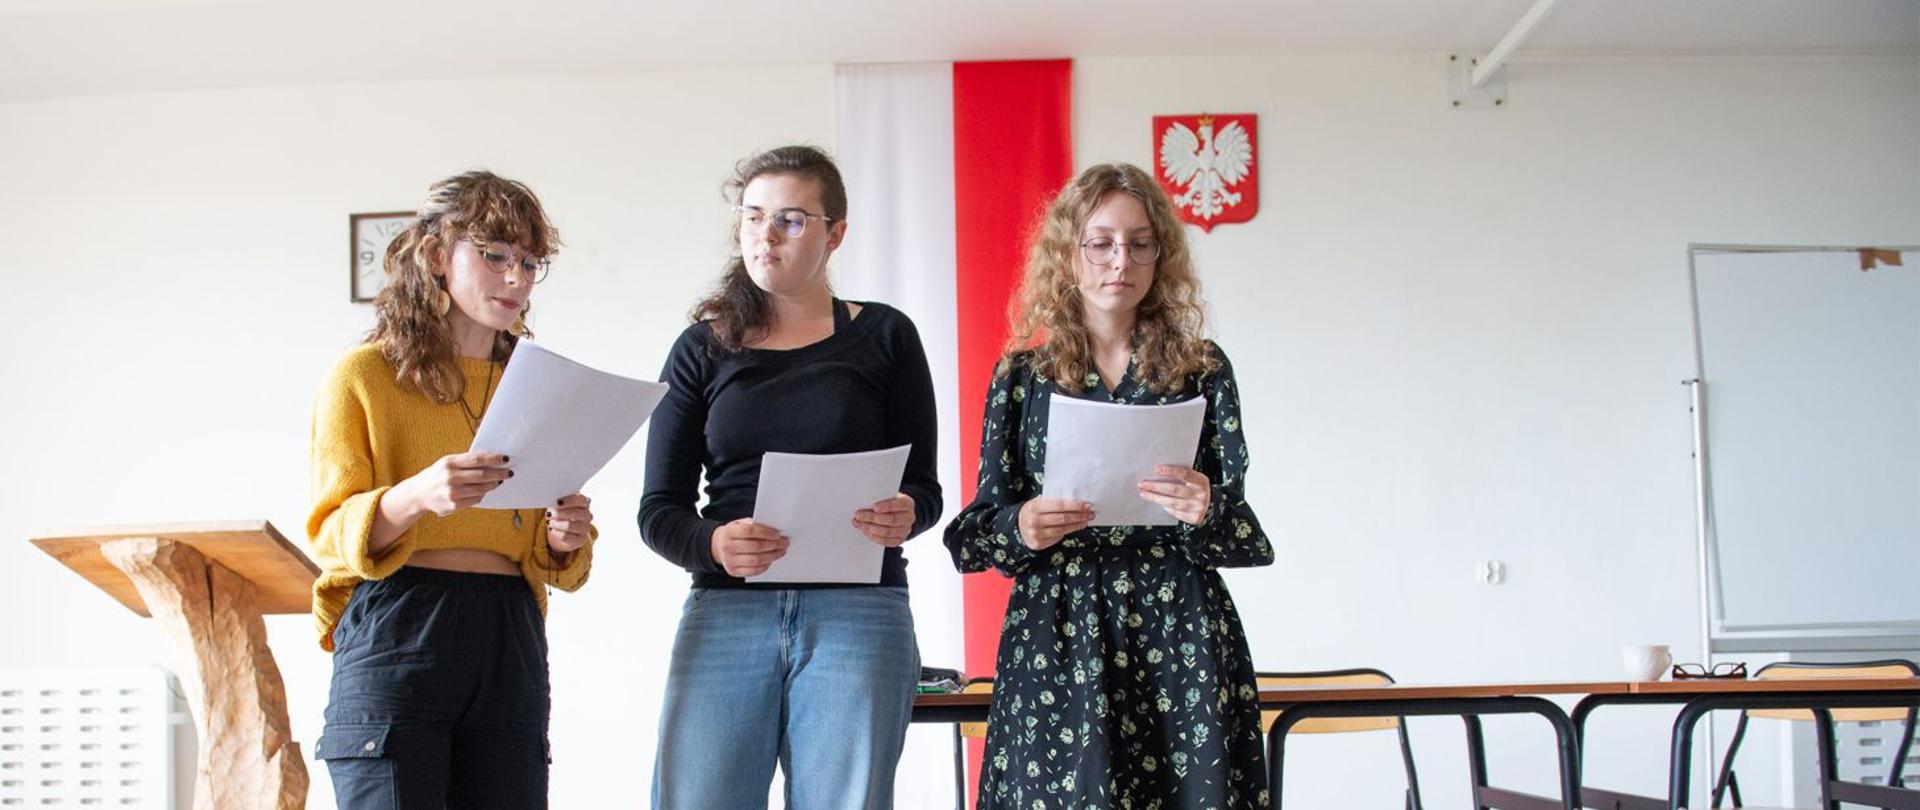 Trójka uczennic czytająca z kartek Ballady i romanse Adama Mickiewicza. W tle na białej ścianie flaga Polski oraz obok zawieszone godło Polski.